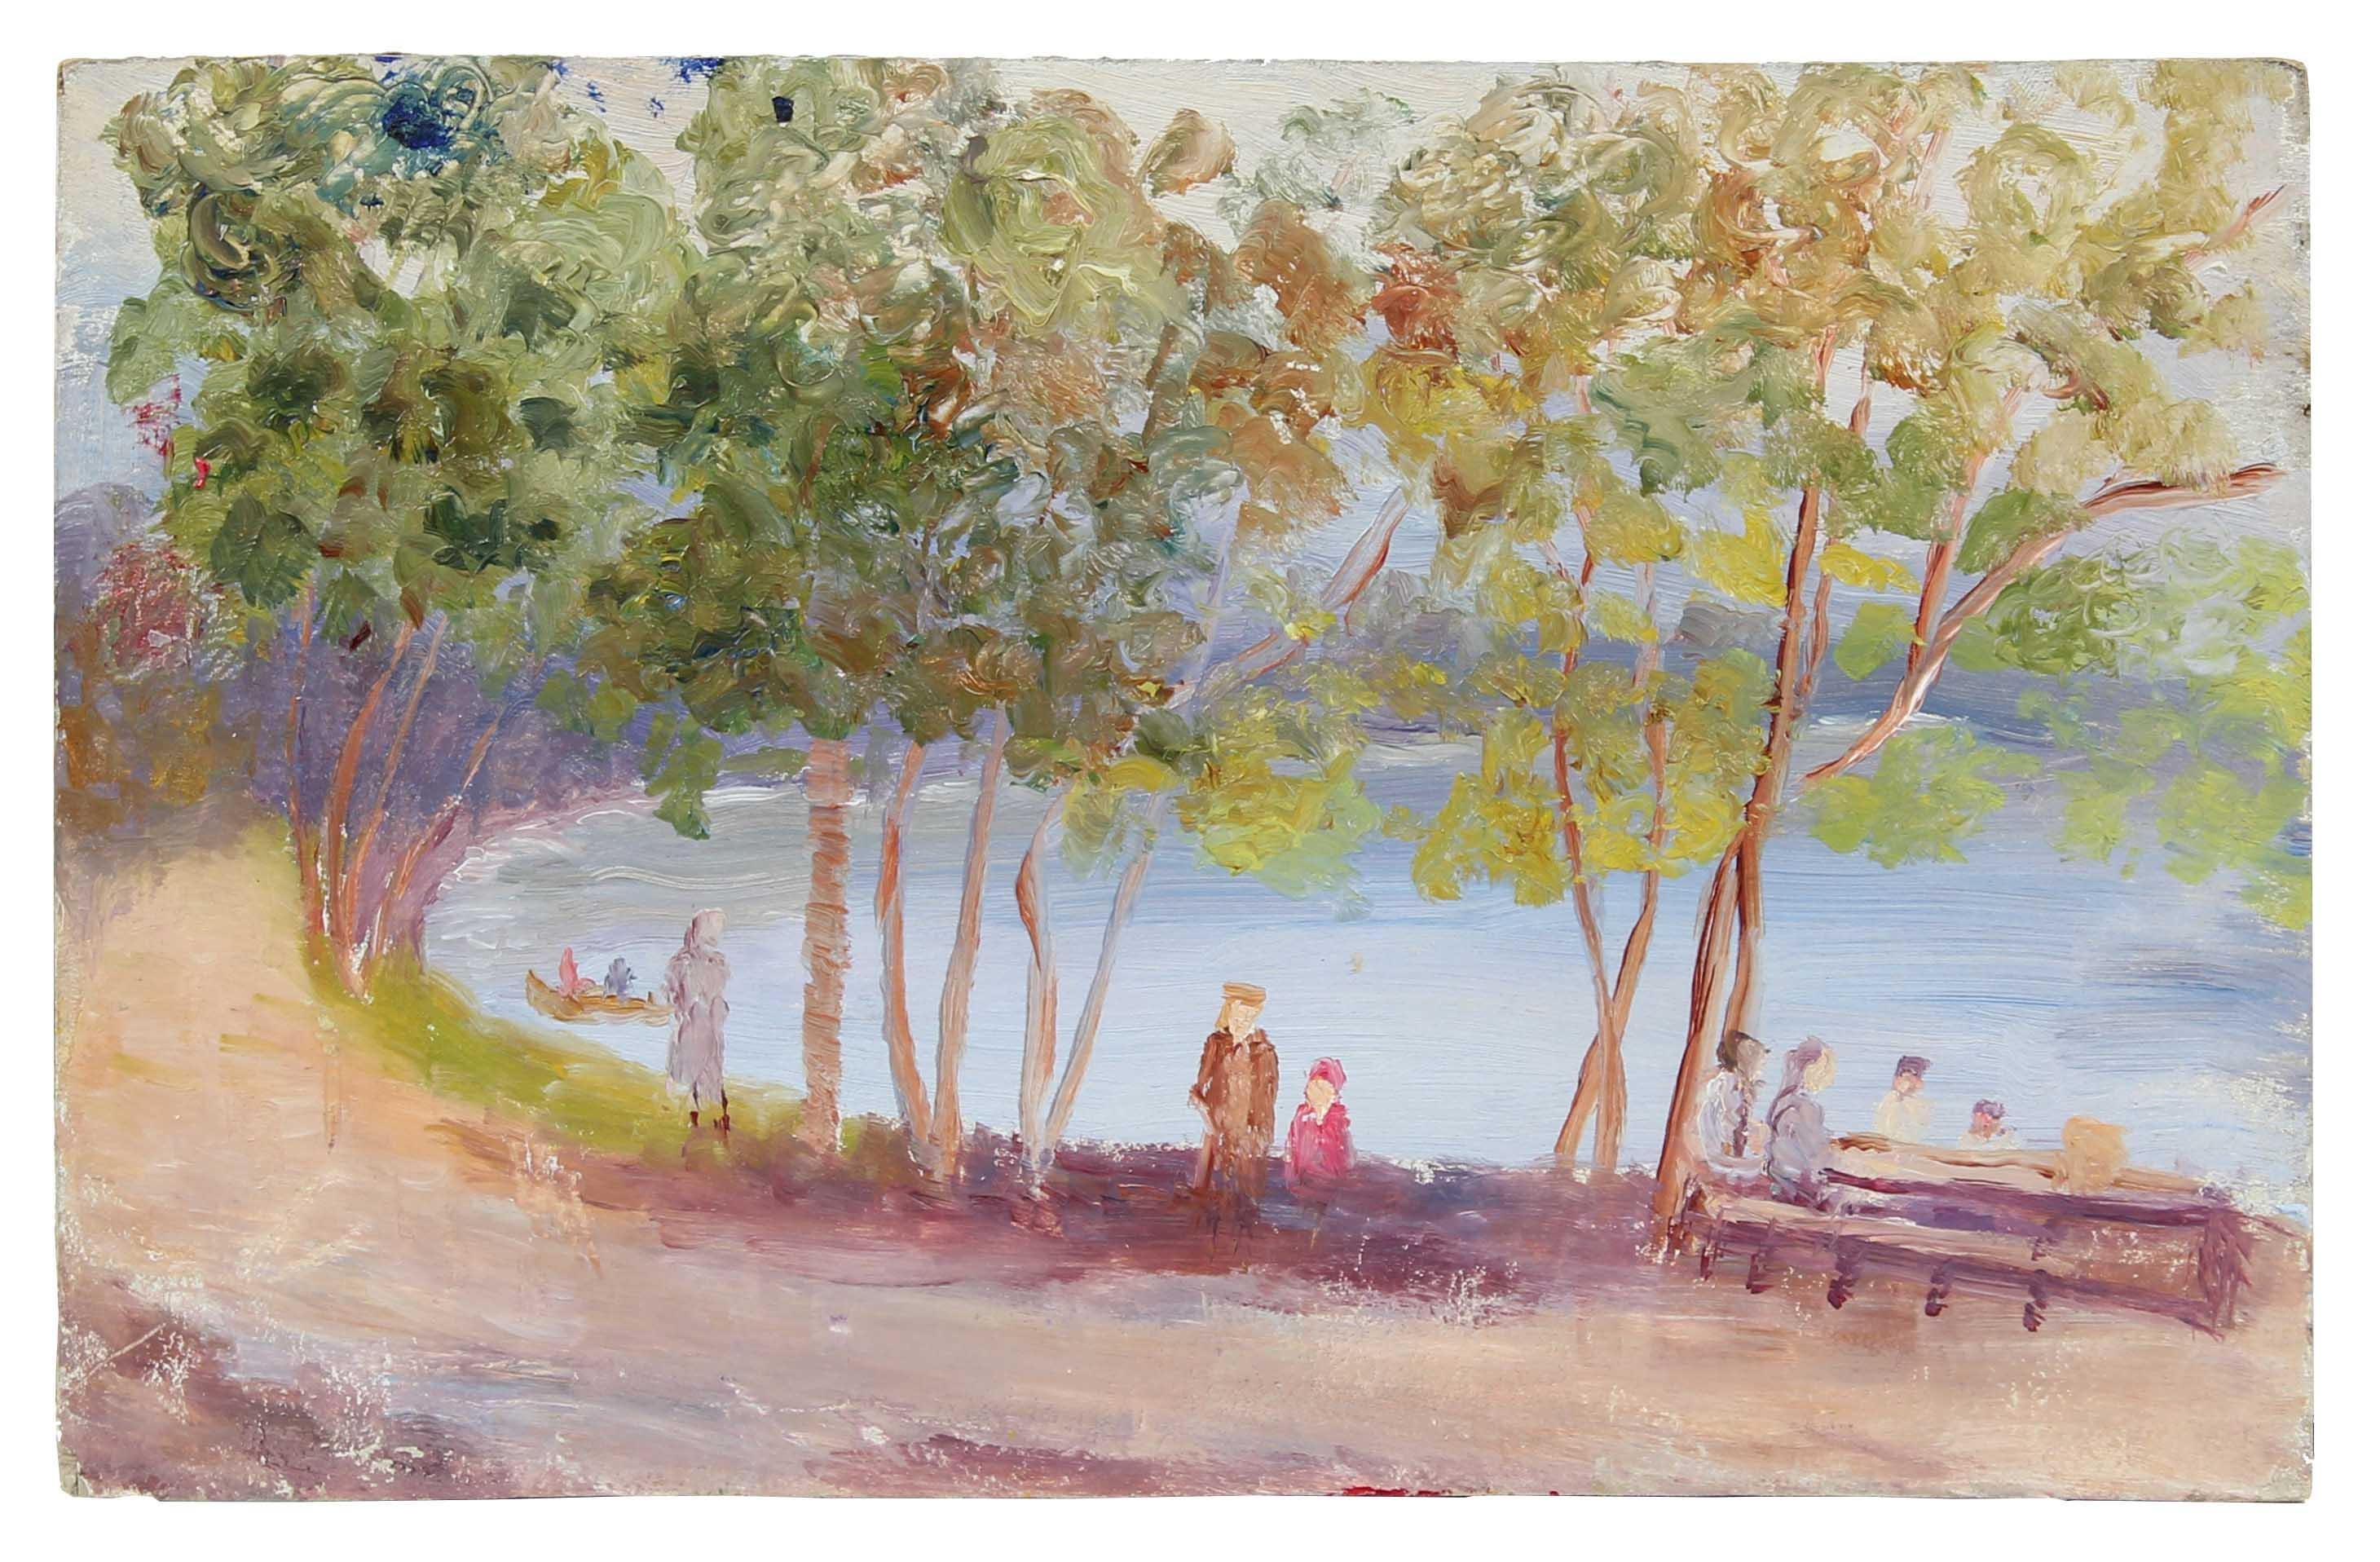 Duncan Davidson Landscape Painting - Impressionist Coastal Landscape, Oil Painting, Circa 1900-1930s